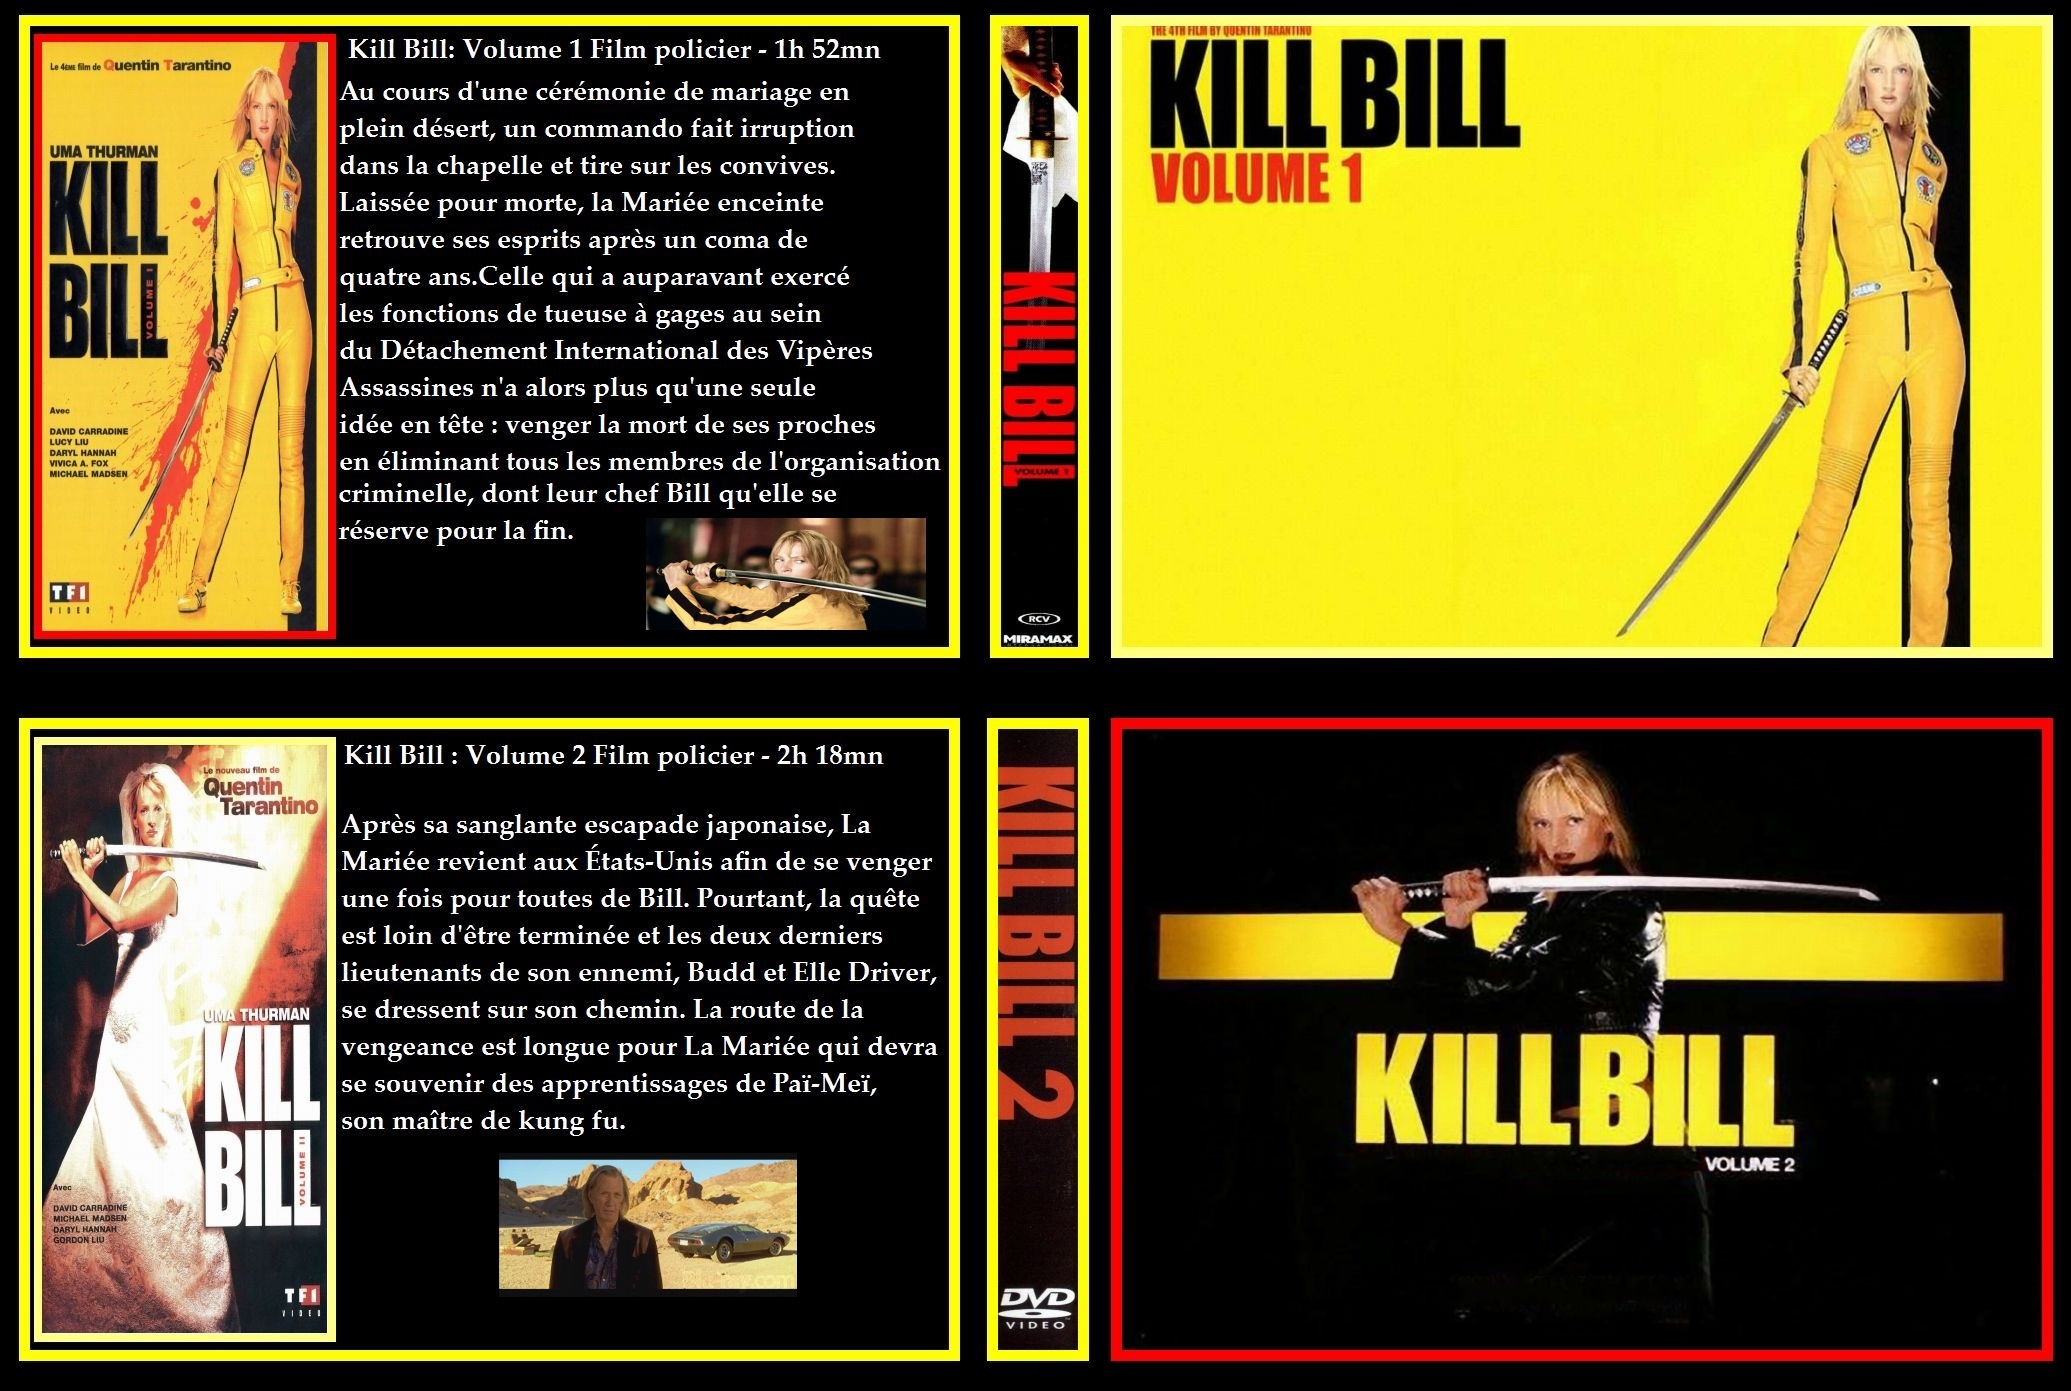 Jaquette DVD Kill Bill 1 et 2 custom v2